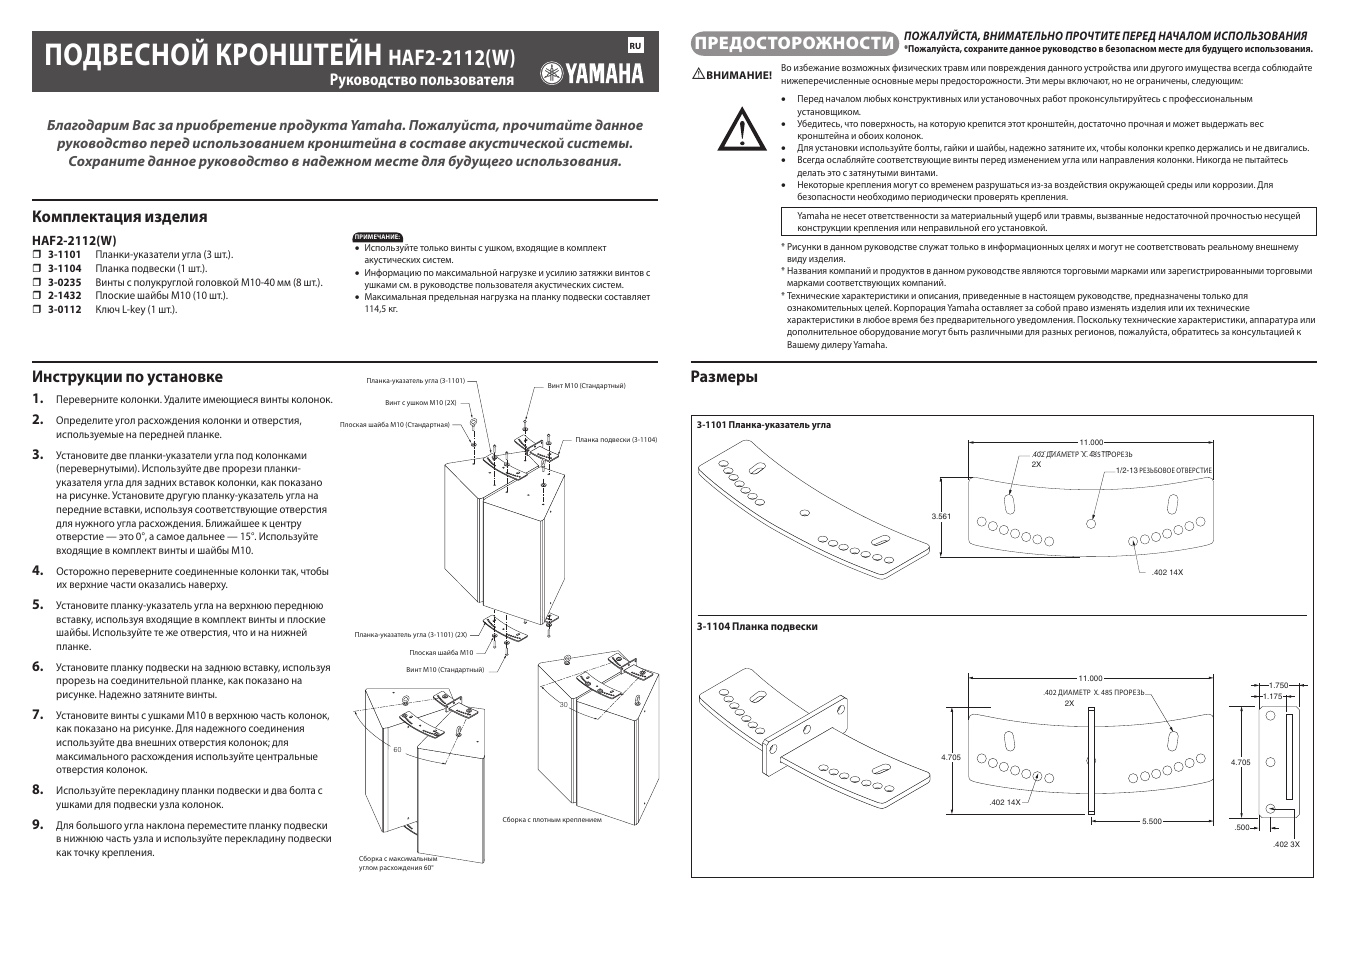 Инструкция по эксплуатации Yamaha haf2-2112 | 1 cтраница